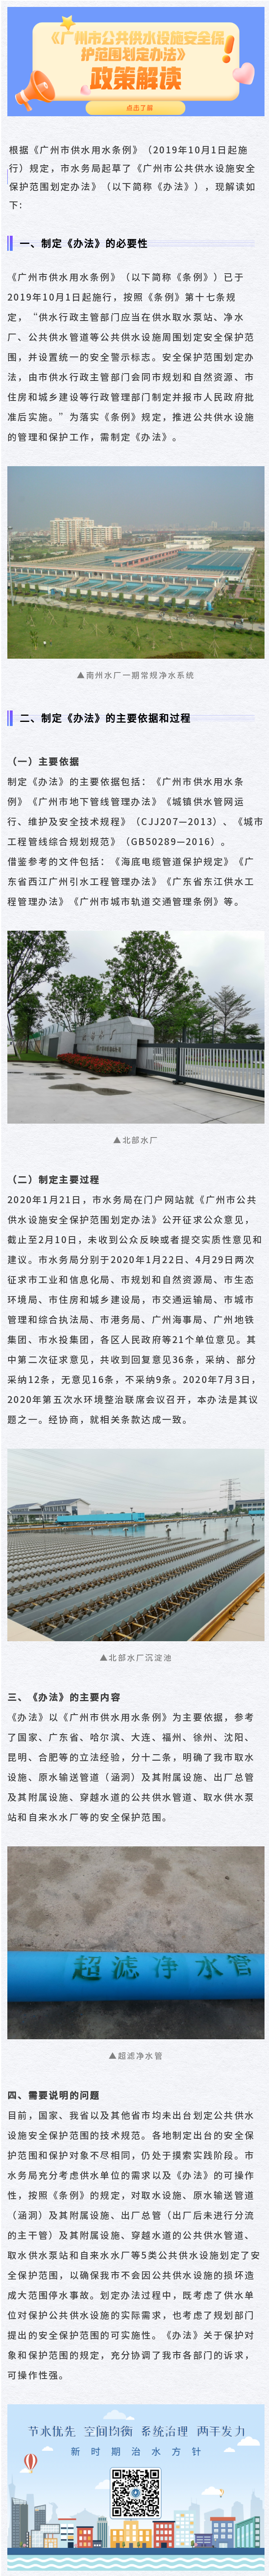 “一图解读”《广州市公共供水设施保护范围划定办法》.png